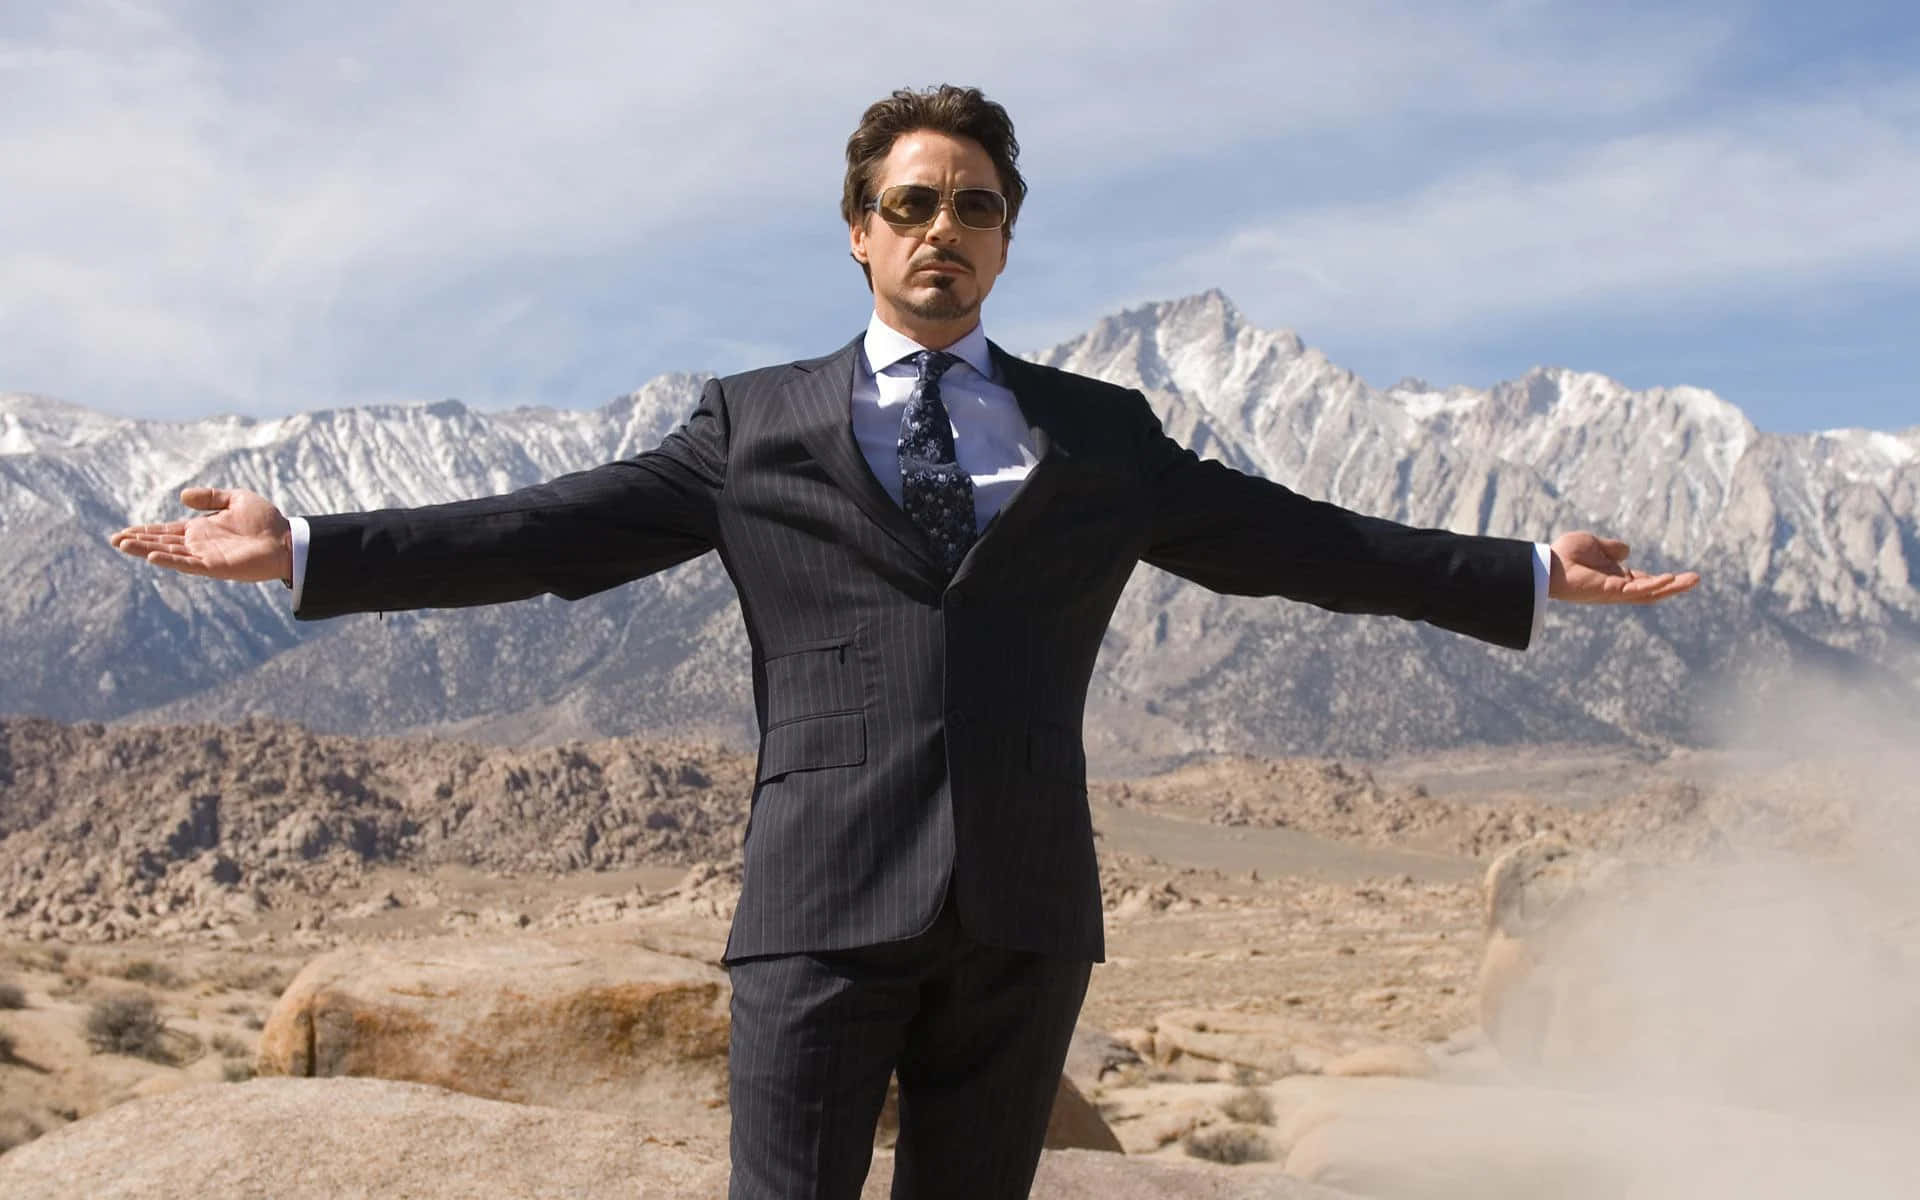 Tony Stark Desert Pose